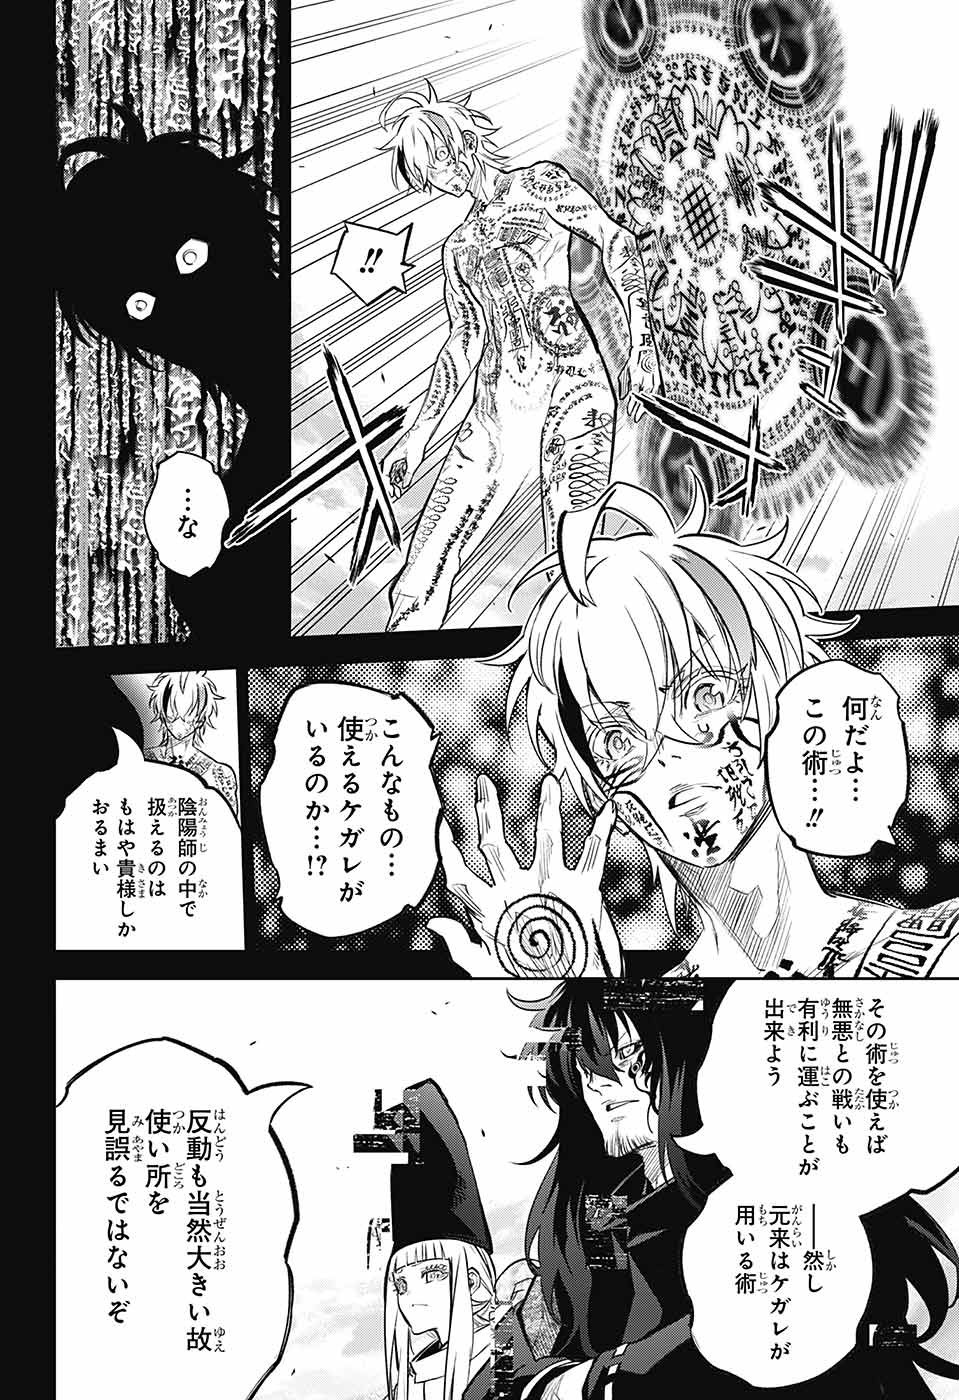 Sousei no Onmyouji - Chapter 113 - Page 8